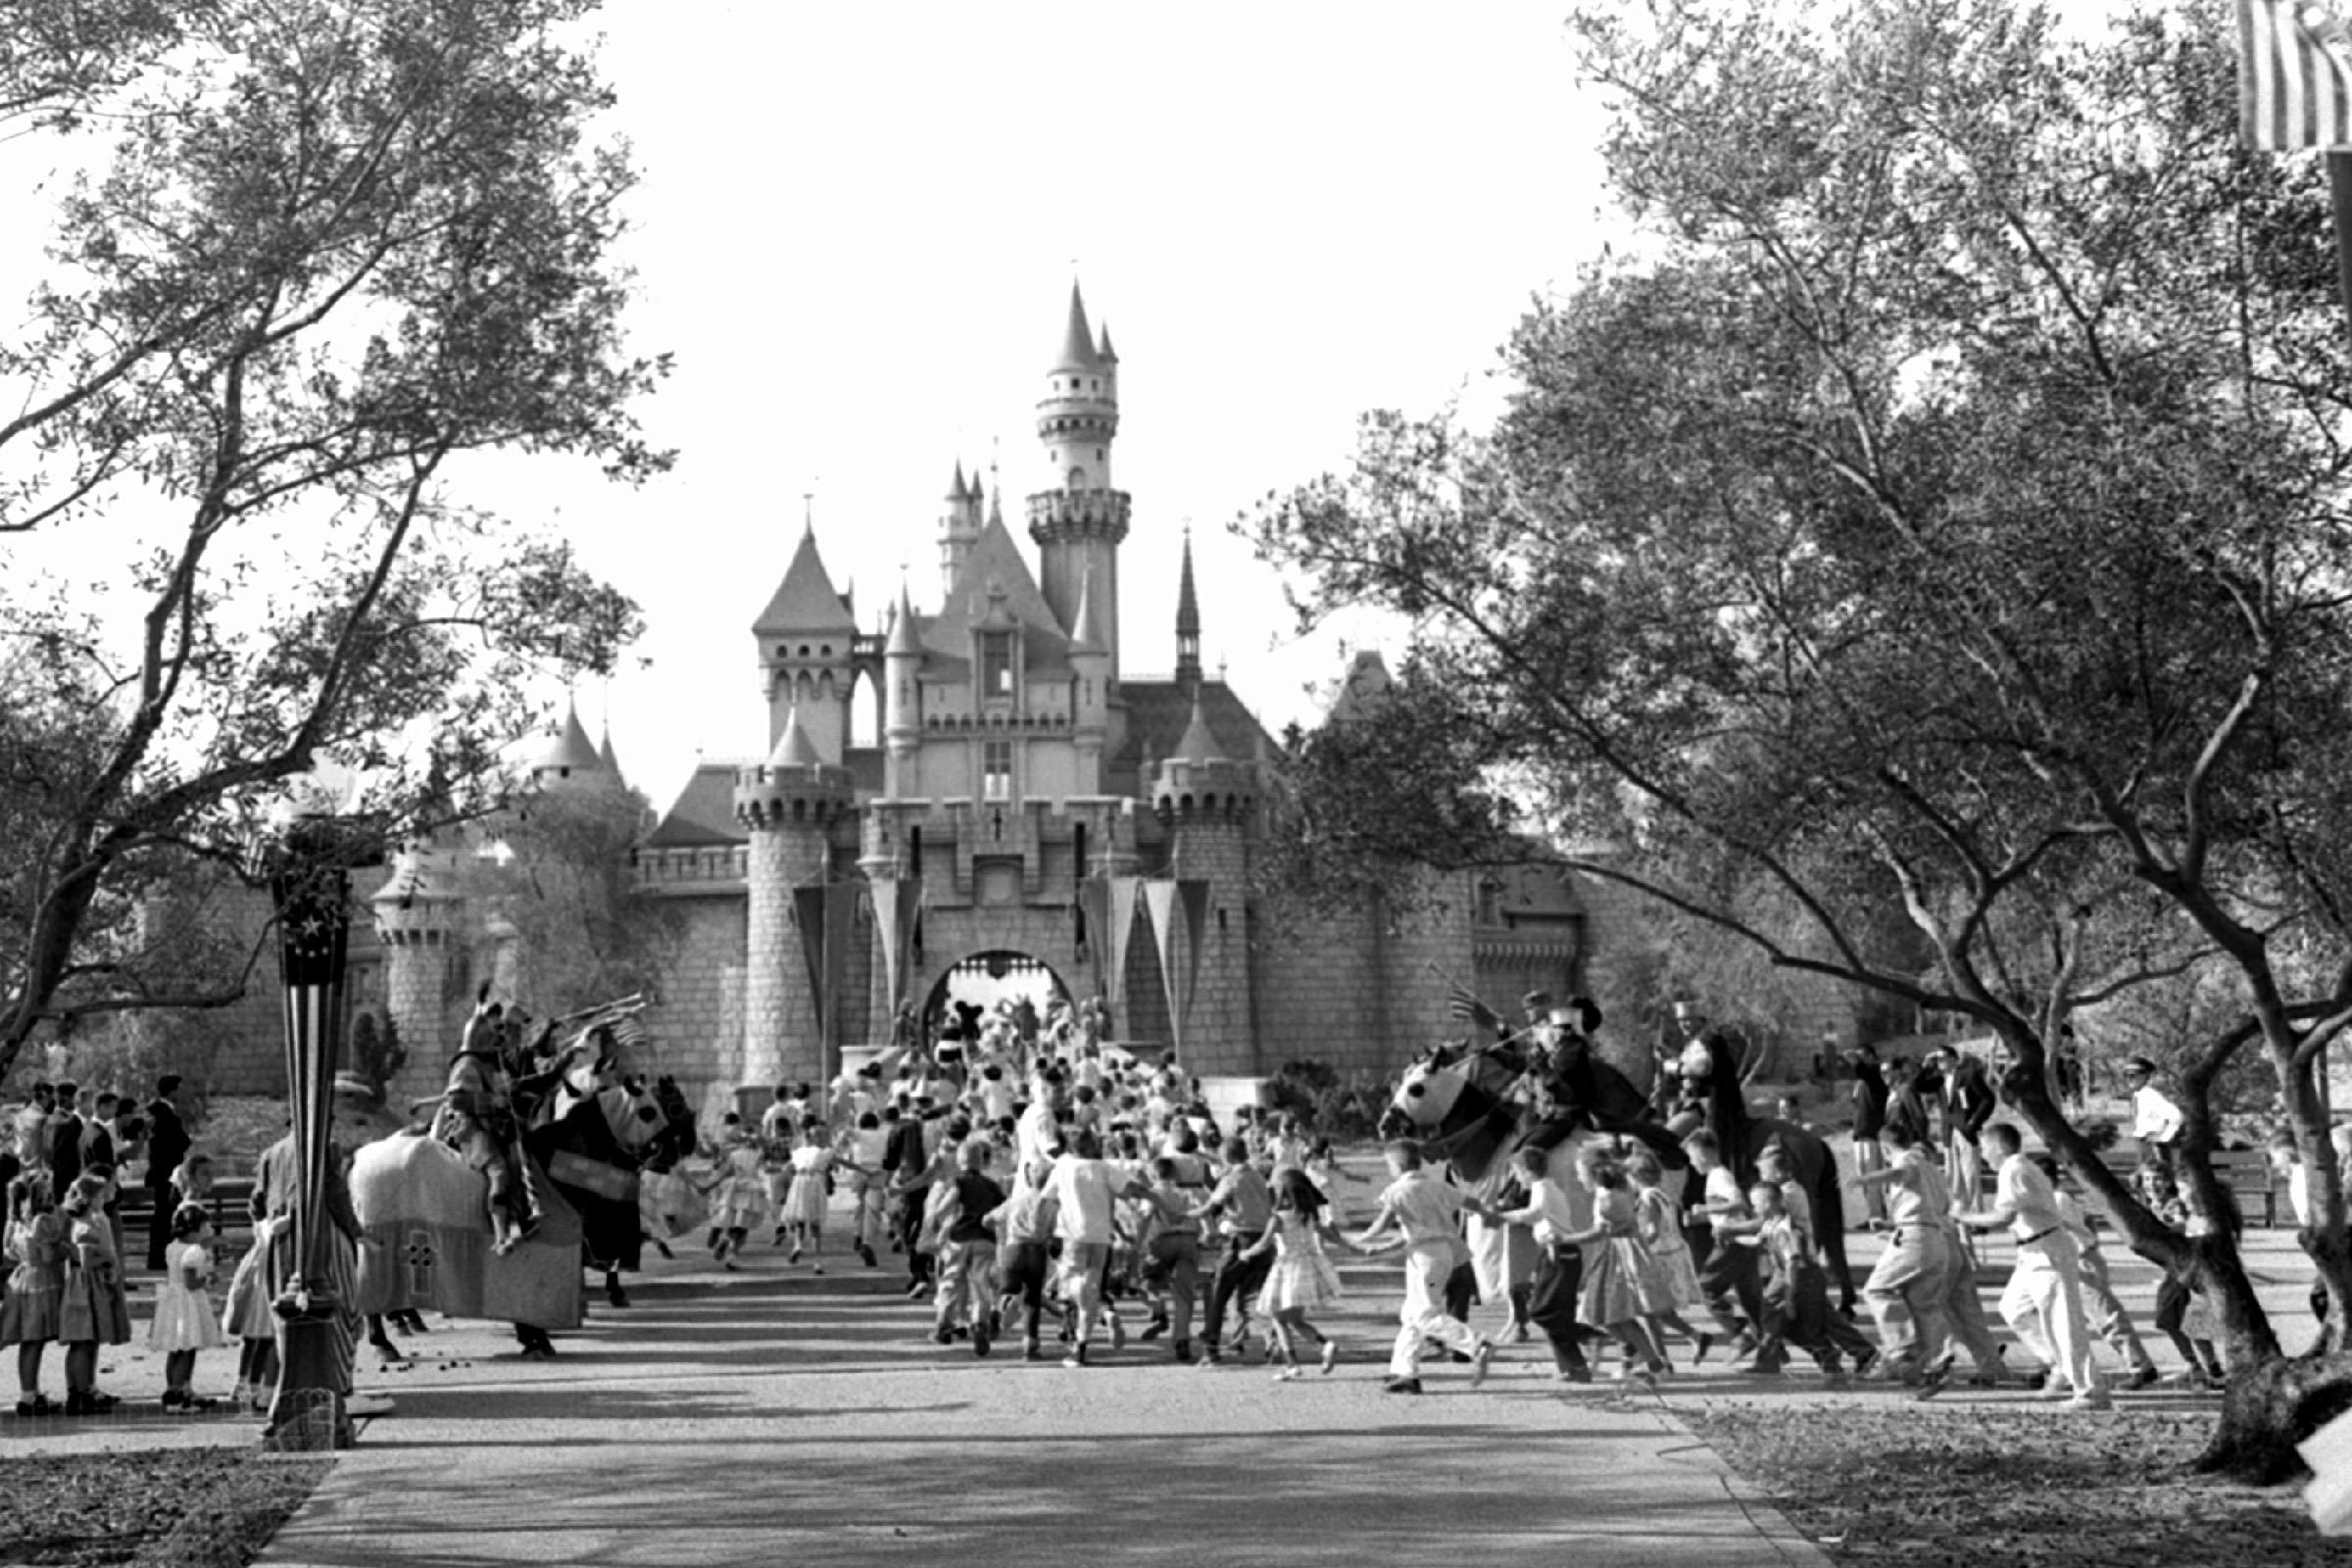 23 hechos mágicos y alucinantes sobre Disneyland 